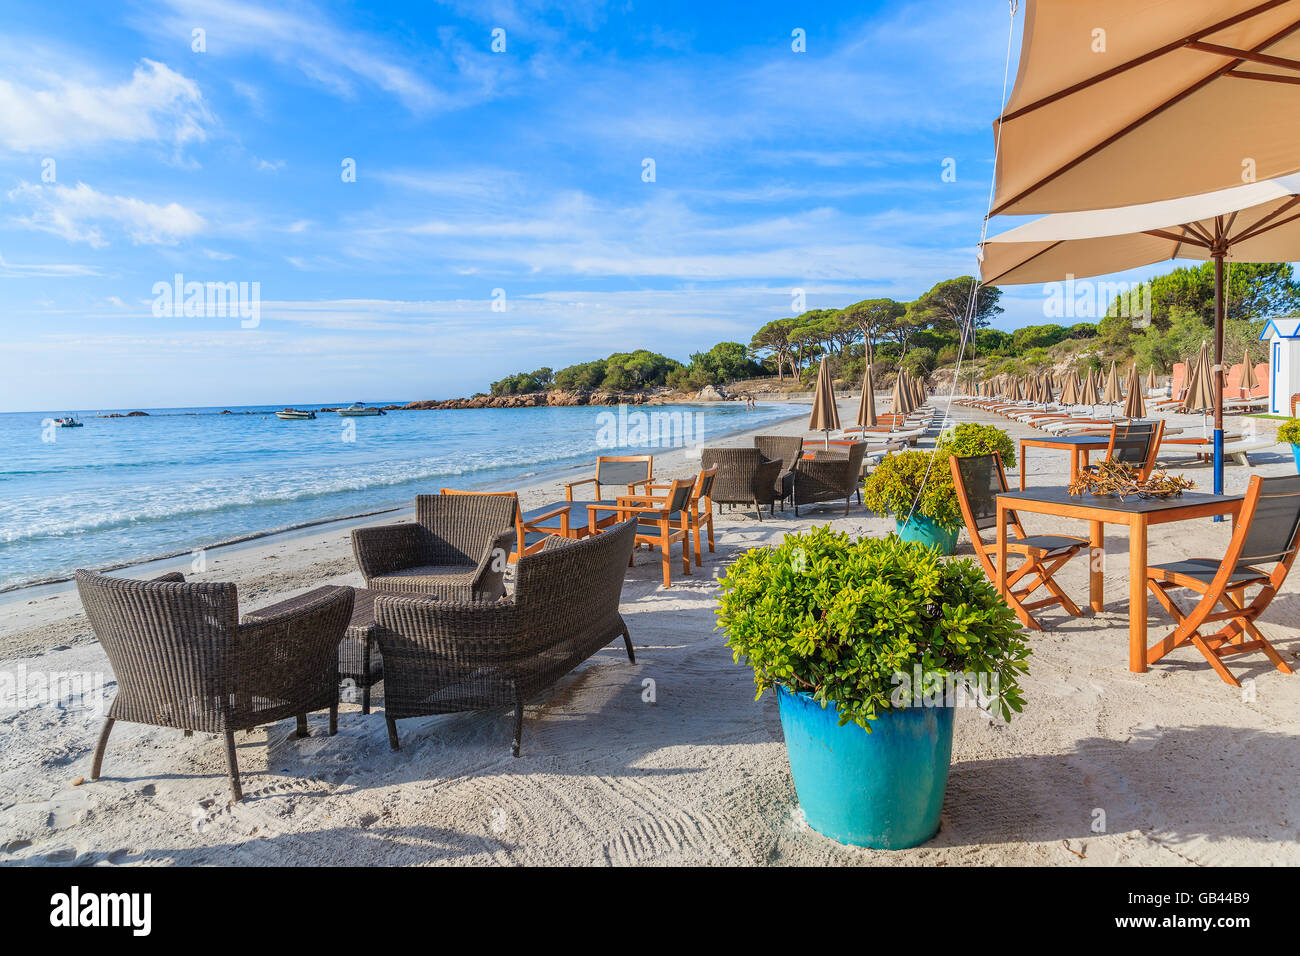 Bar de plage de sable sur la plage de Palombaggia, Corse, France Banque D'Images